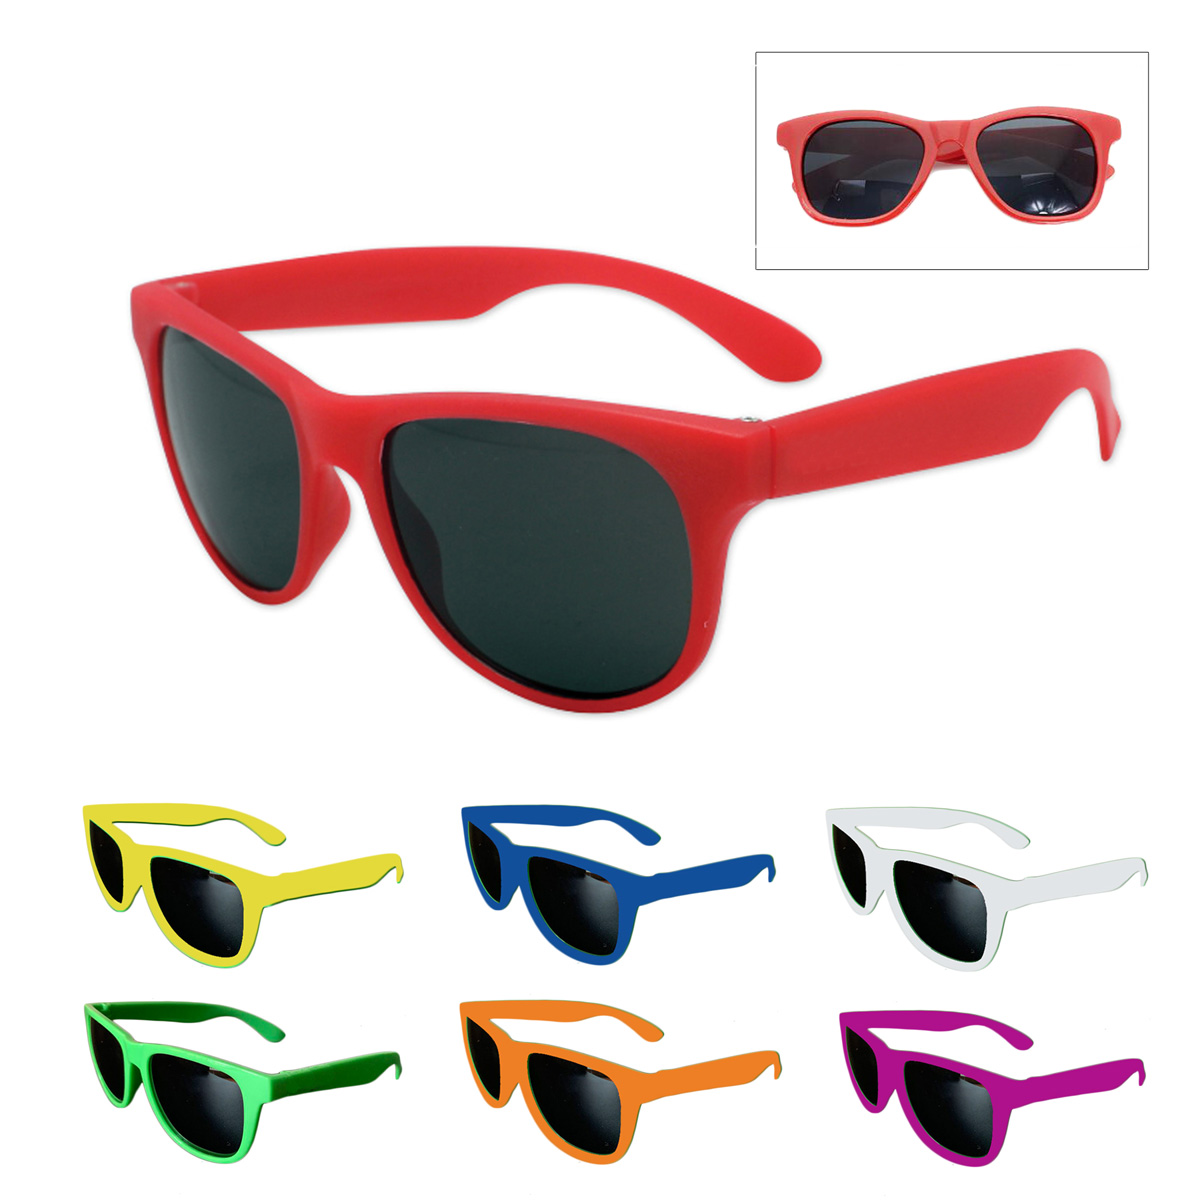 GL-JJJ1033 Retro Neon Sunglasses